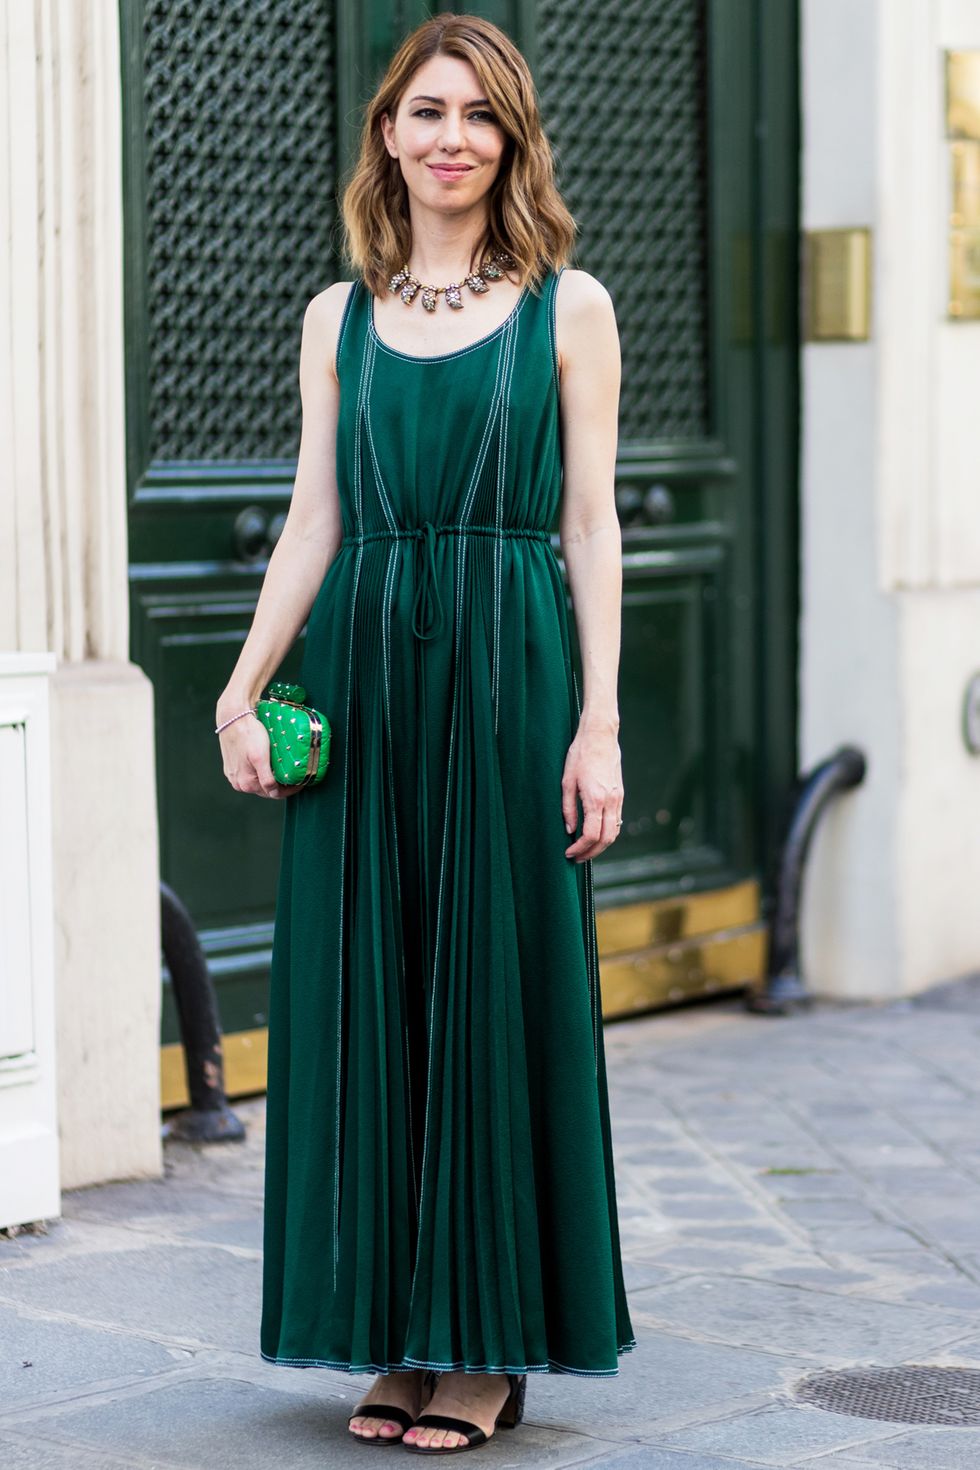 Green, Dress, Formal wear, One-piece garment, Style, Slipper, Street fashion, Teal, Jewellery, Gown, 